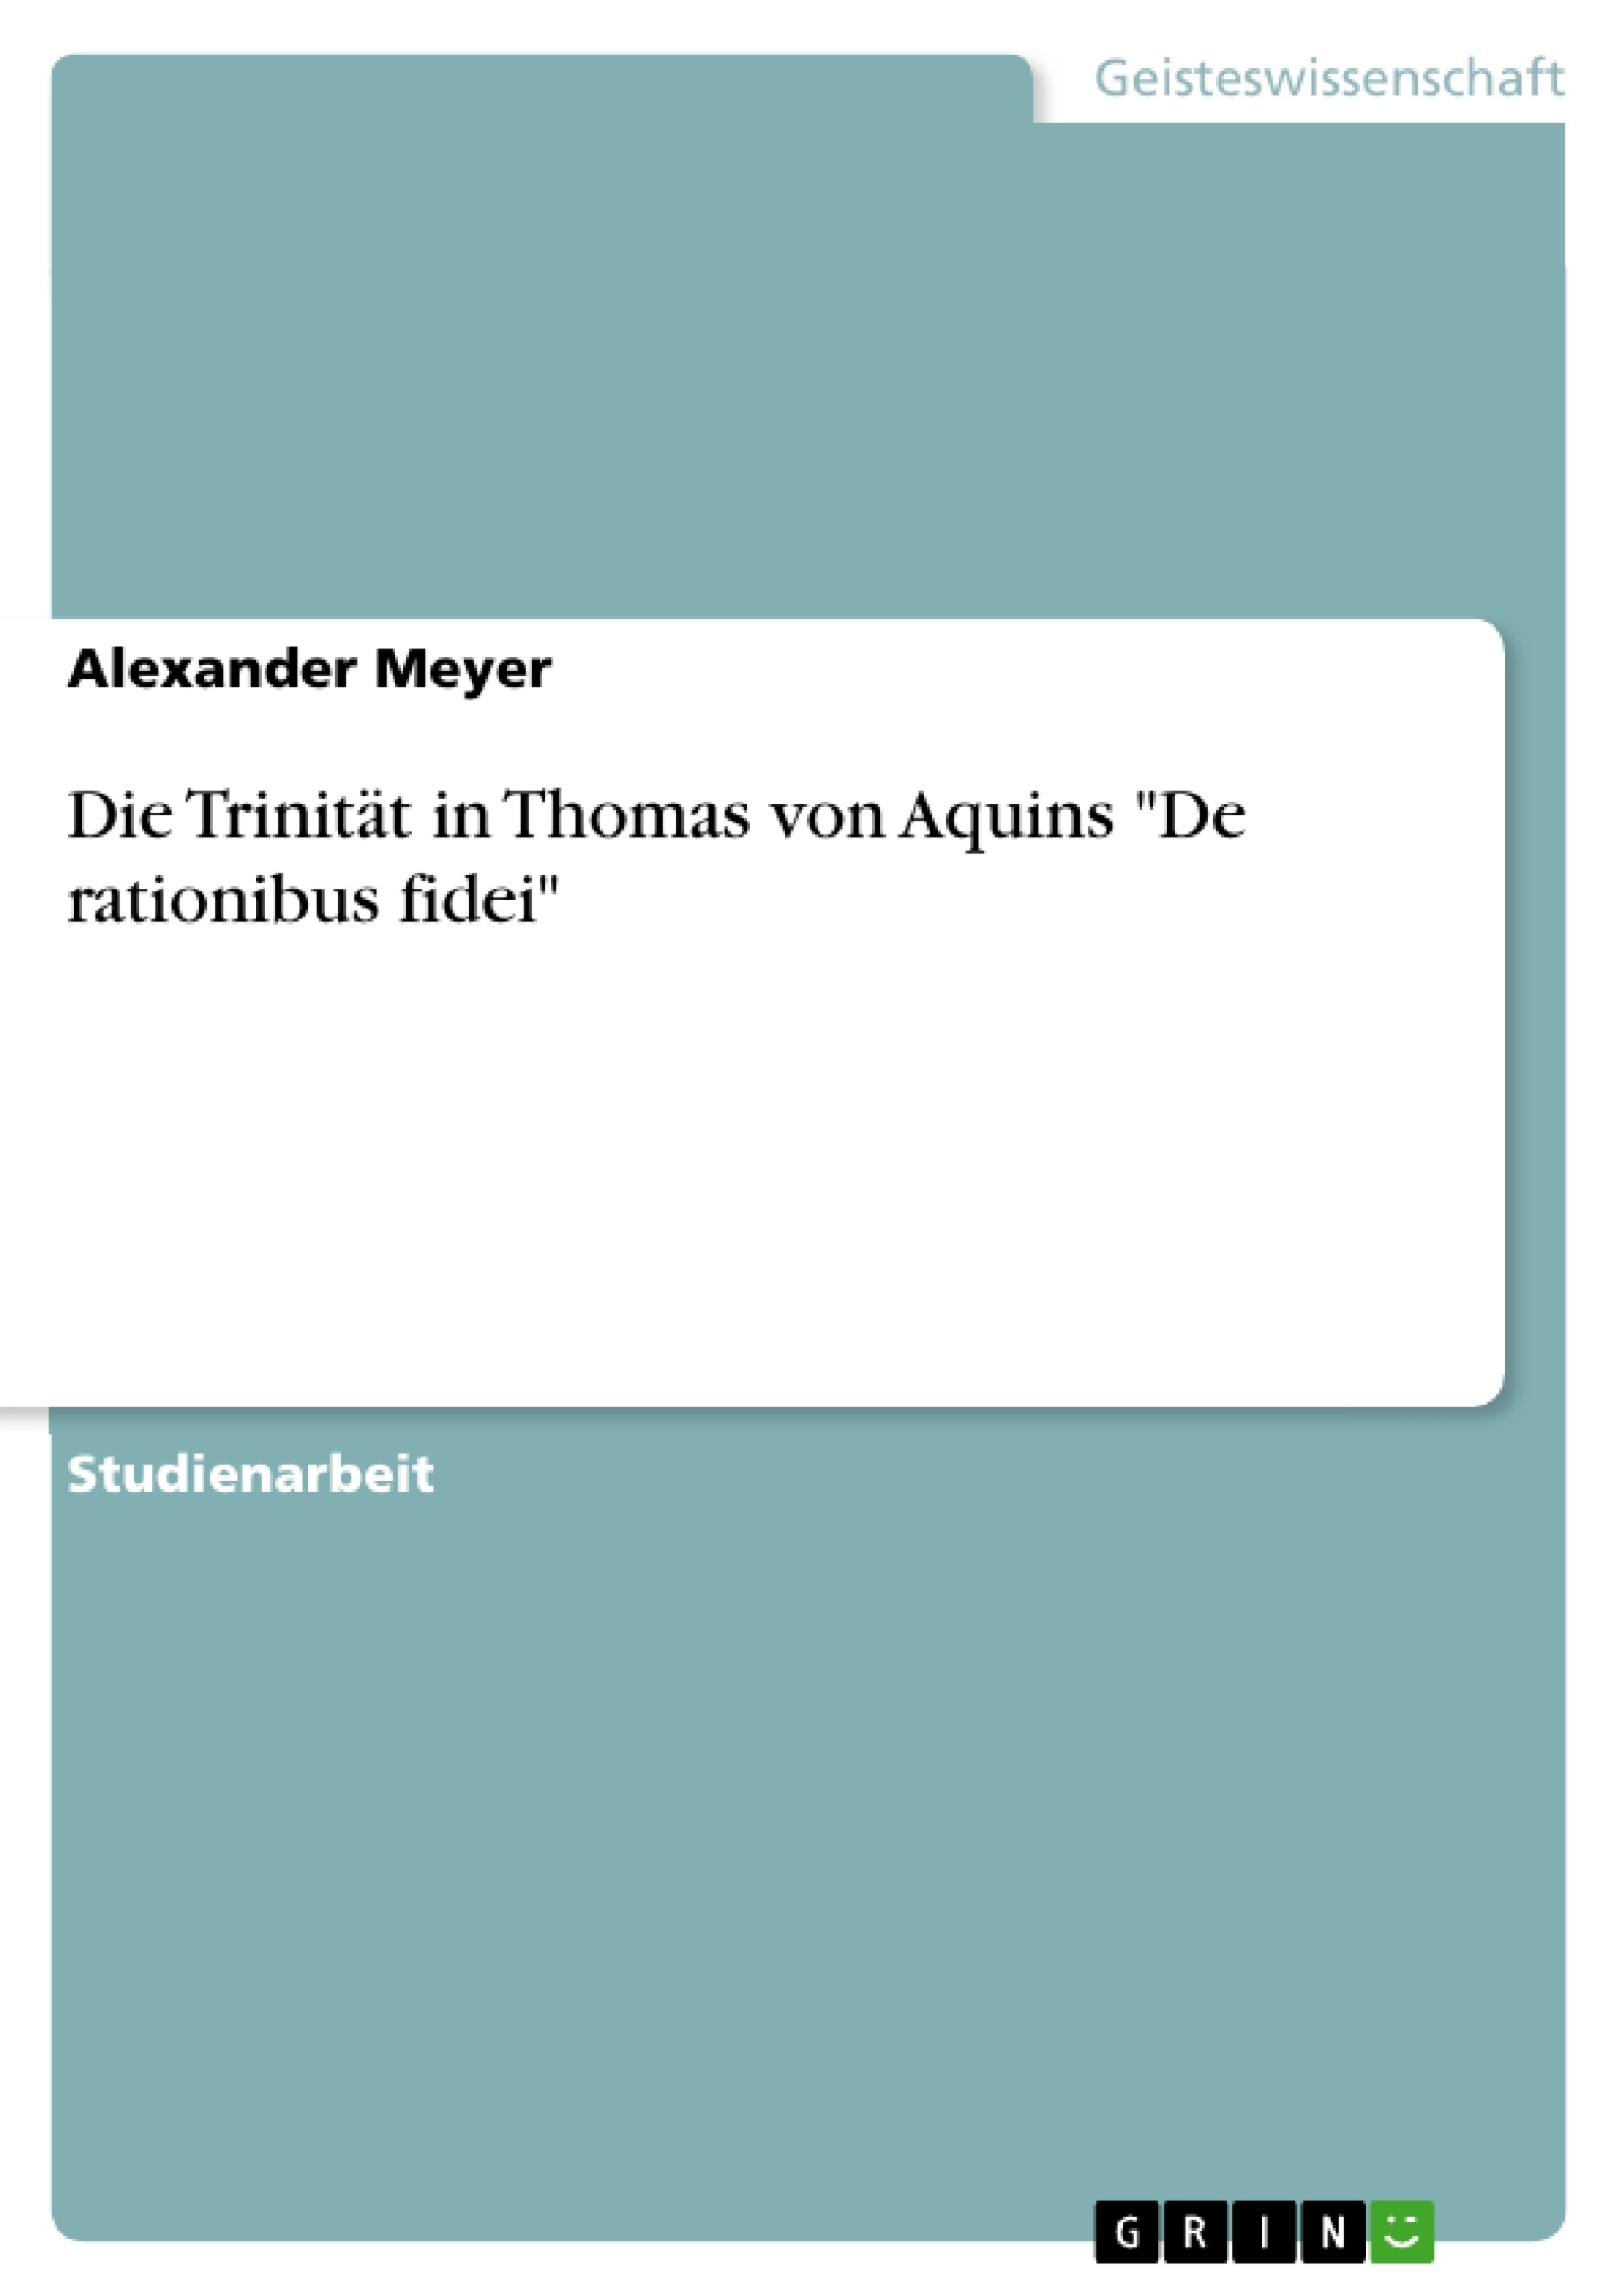 Title: Die Trinität in Thomas von Aquins "De rationibus fidei"